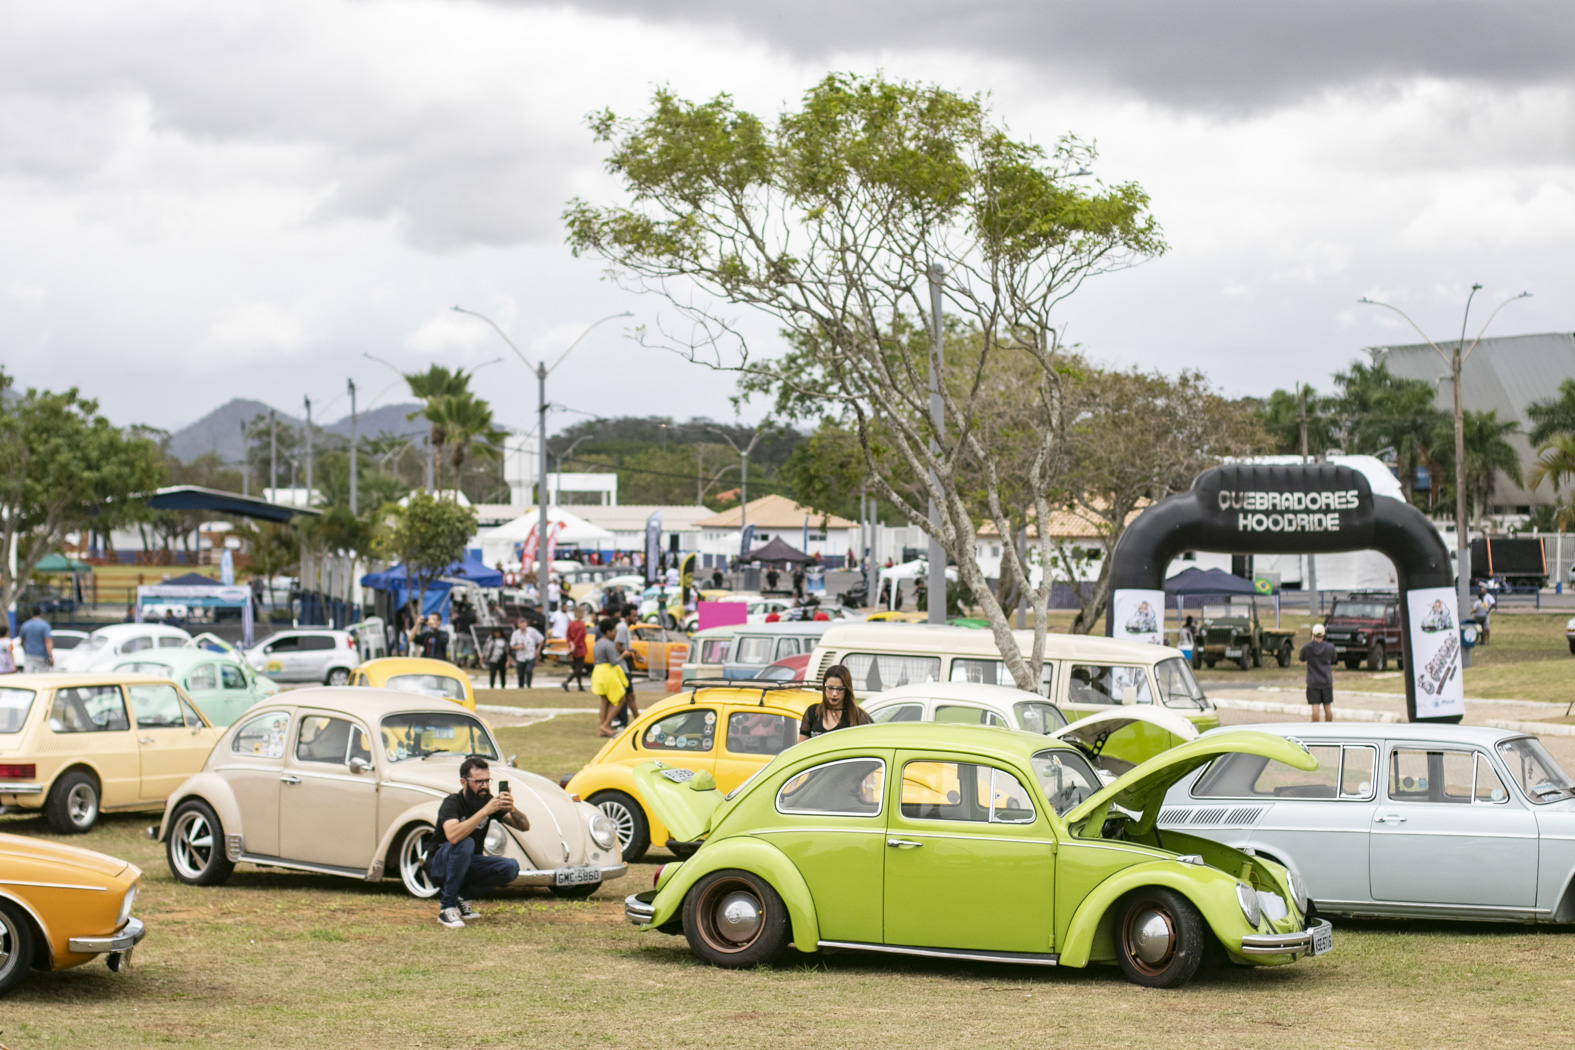 O Encontro de Carros Aircooled e Antigos será realizado nos dias 02 e 03 de setembro, no Parque de Exposições Latiff Mussi Rocha, em Macaé